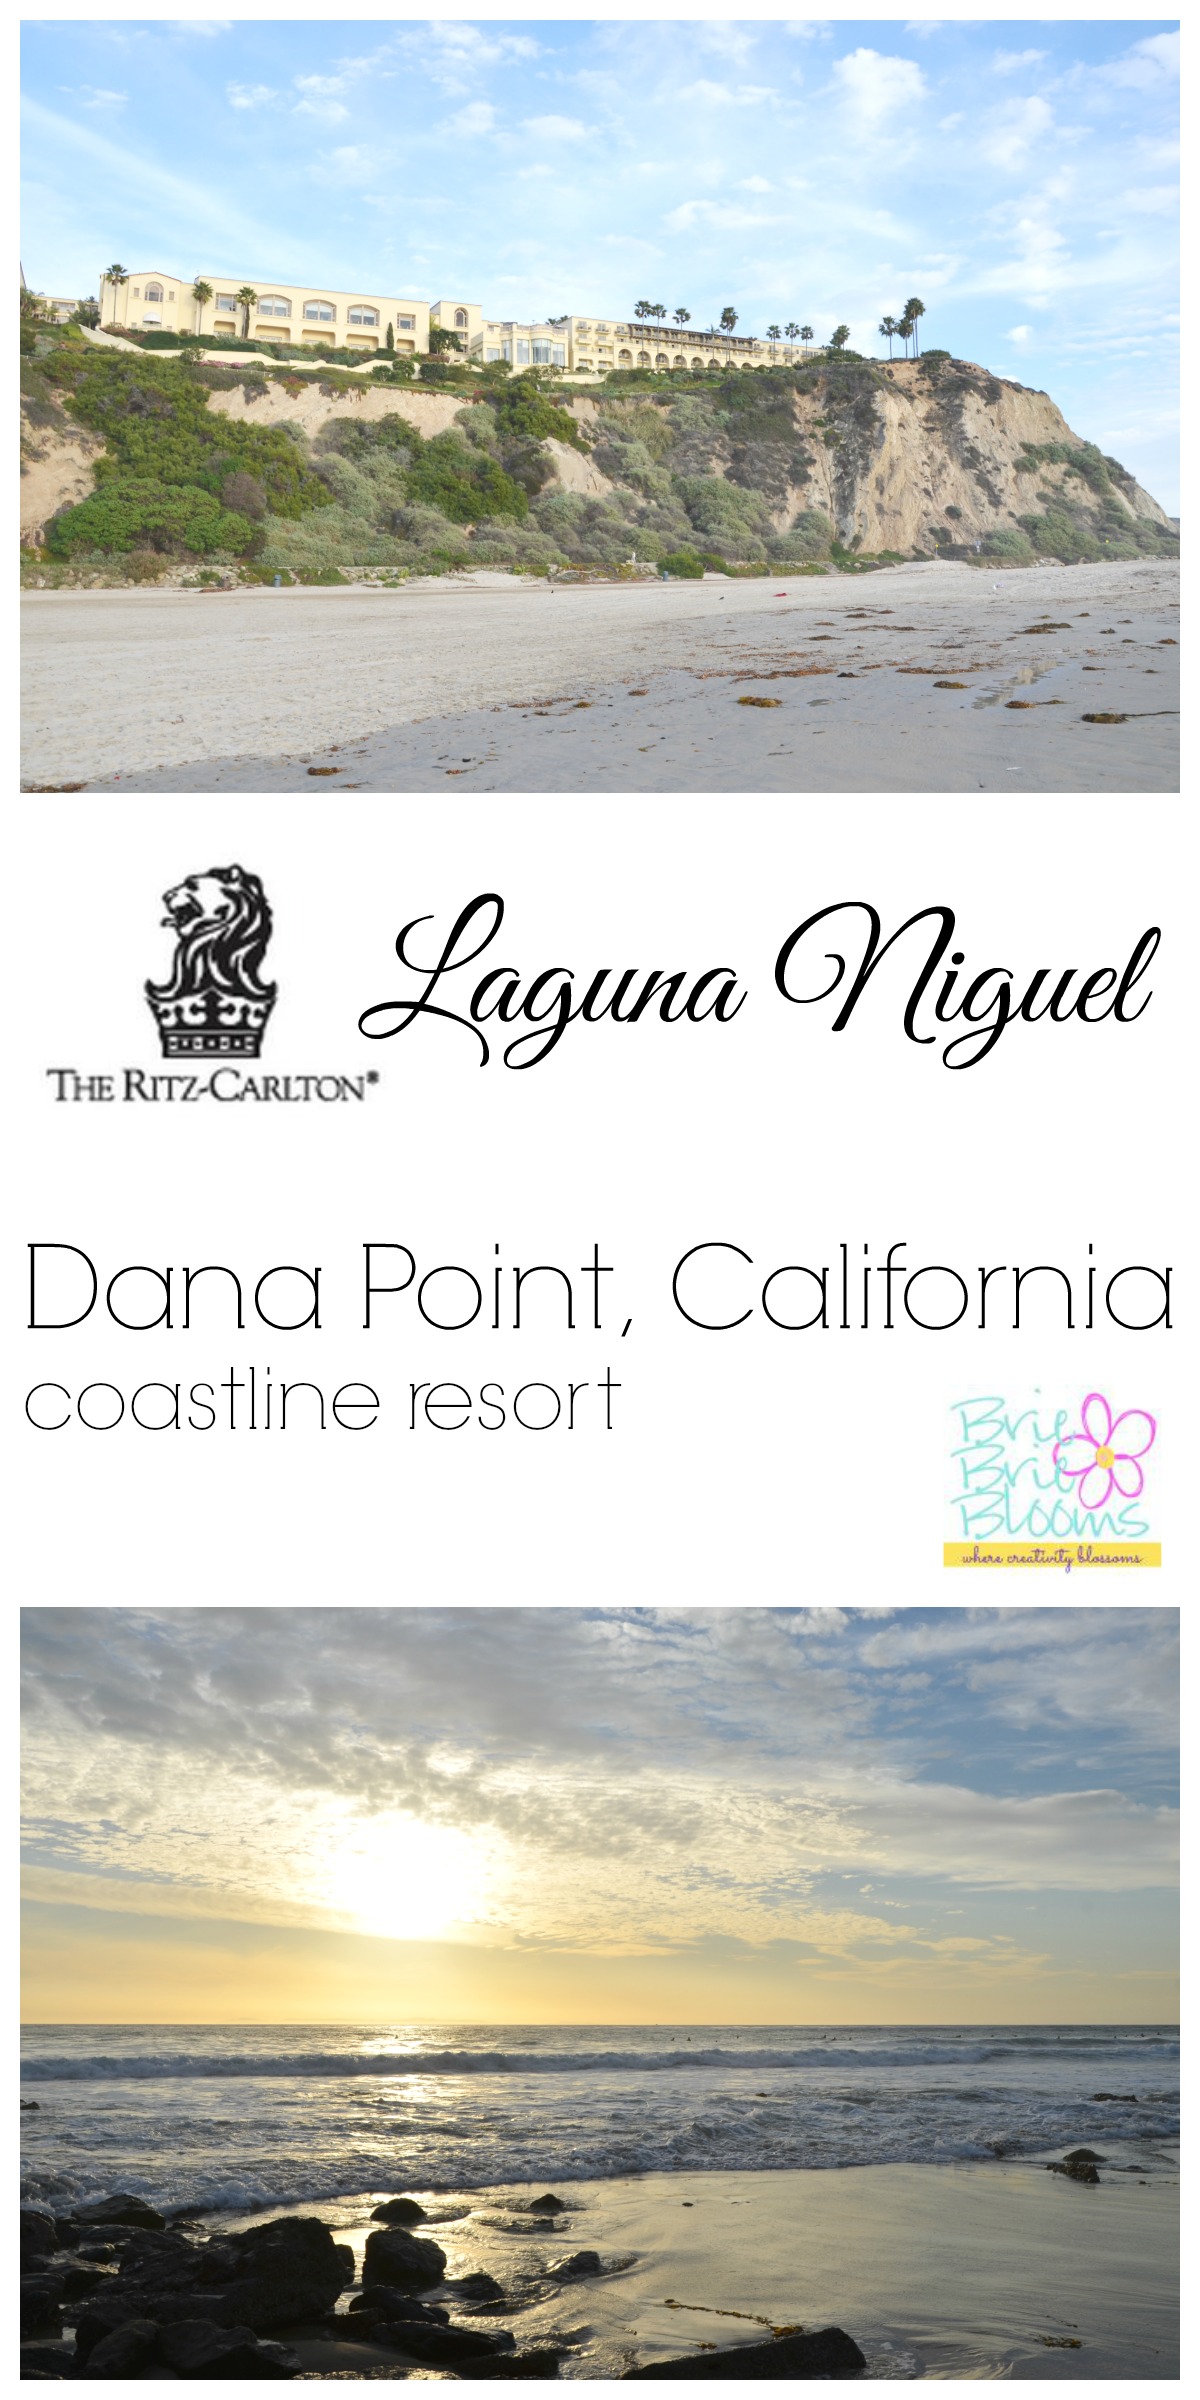 Ritz-Carlton Laguna Niguel, Dana Point, California coastline resort